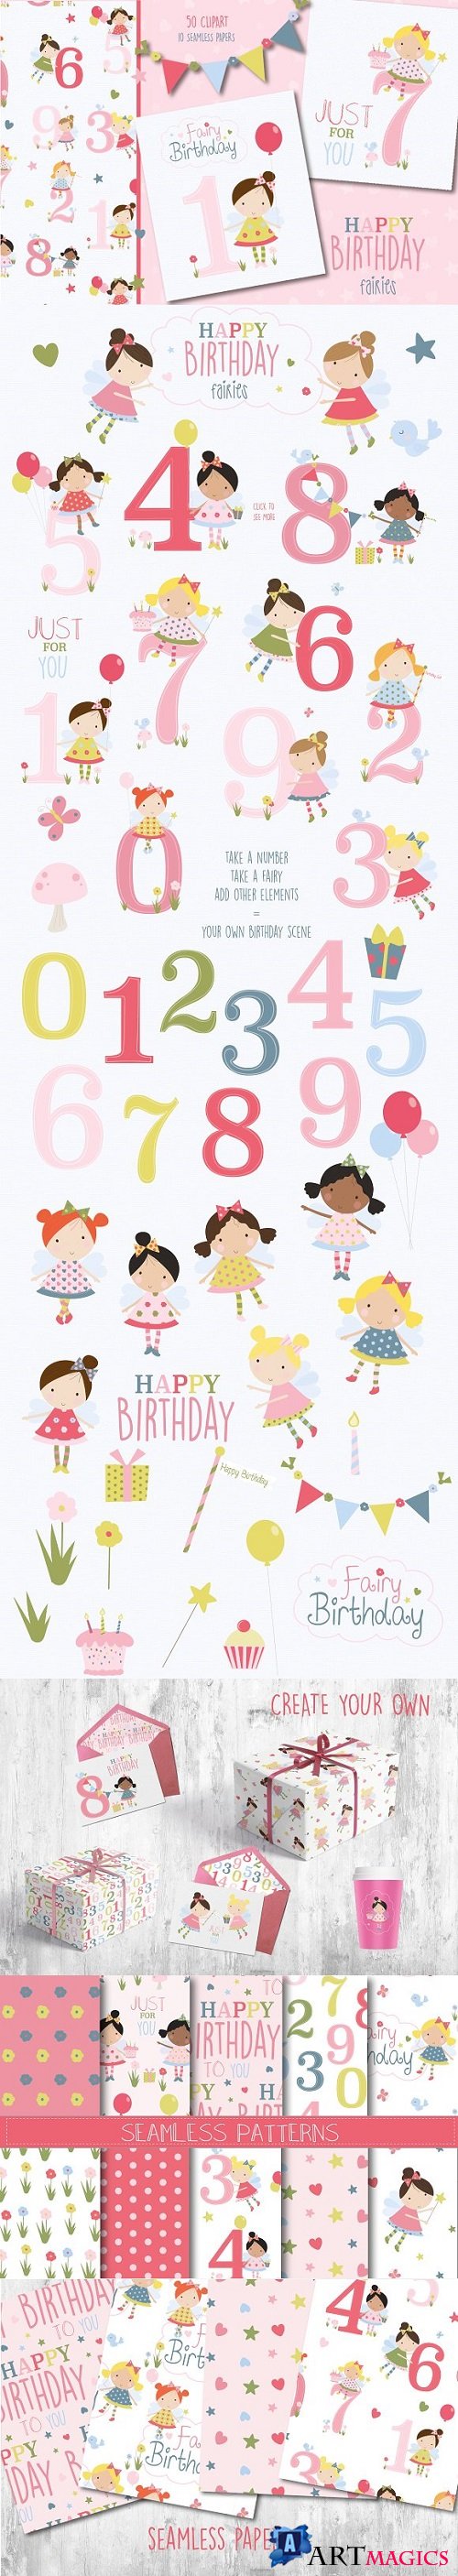 Happy birthday fairies 2209326